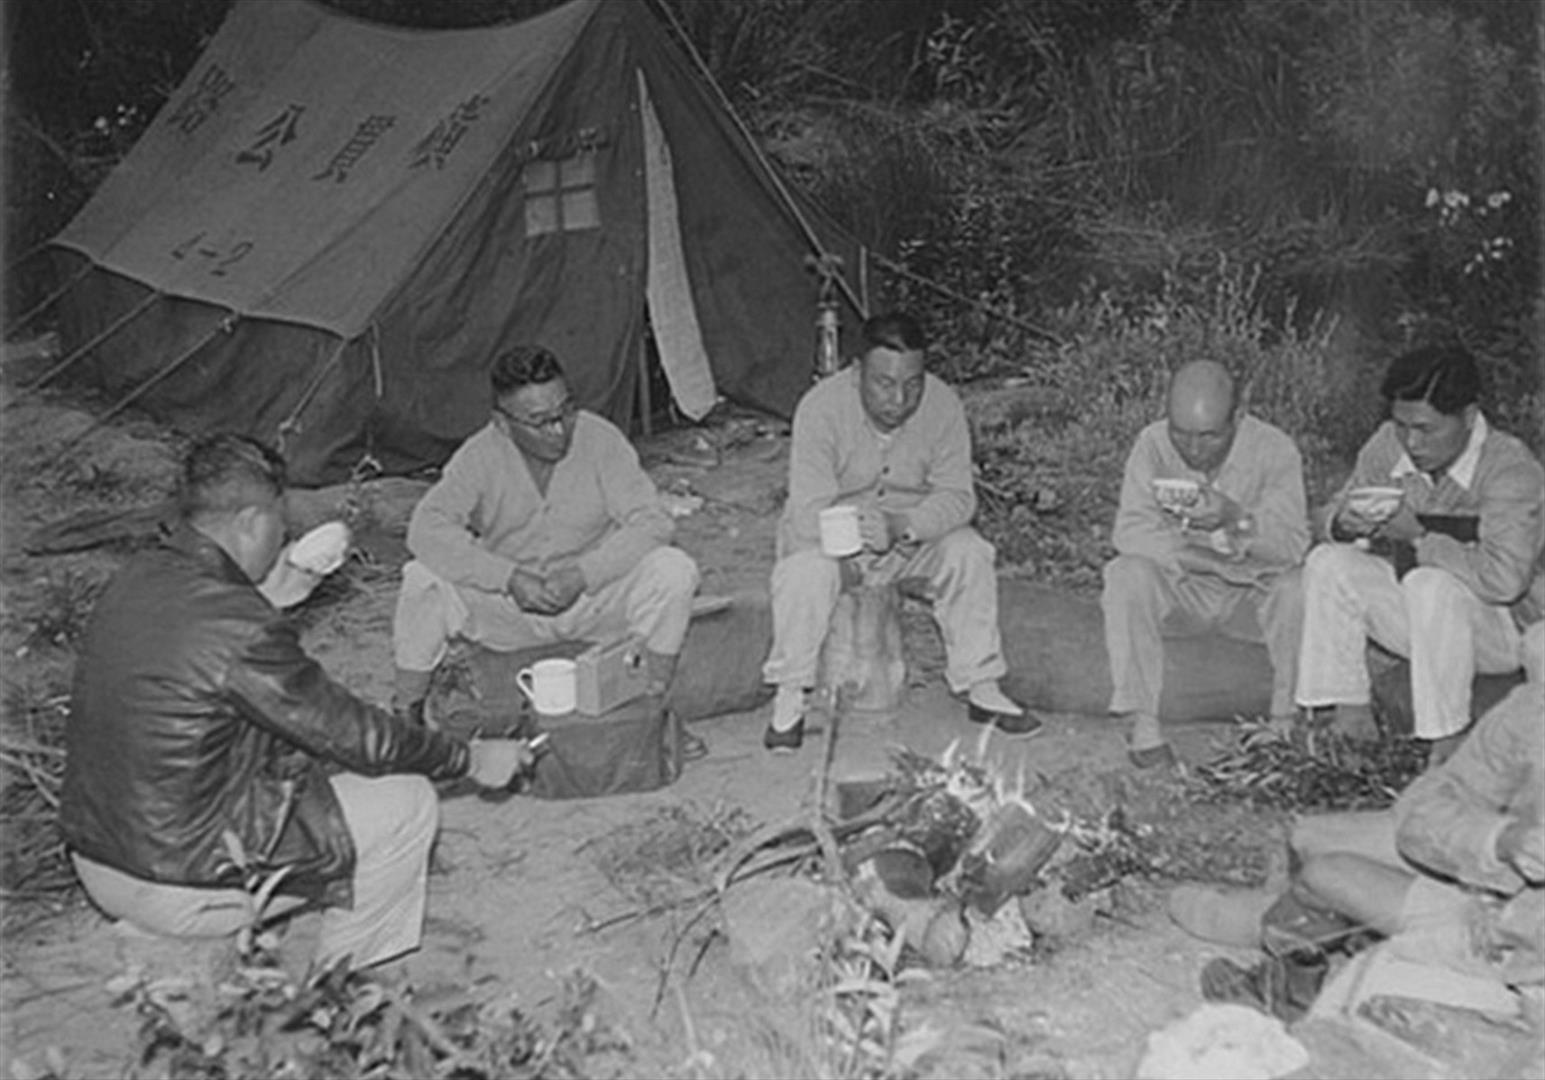 民國45年6月29日「中部橫貫公路」勘察行程，輔導會代主任委員經國先生與隨行成員於途中就地野營過夜之景。